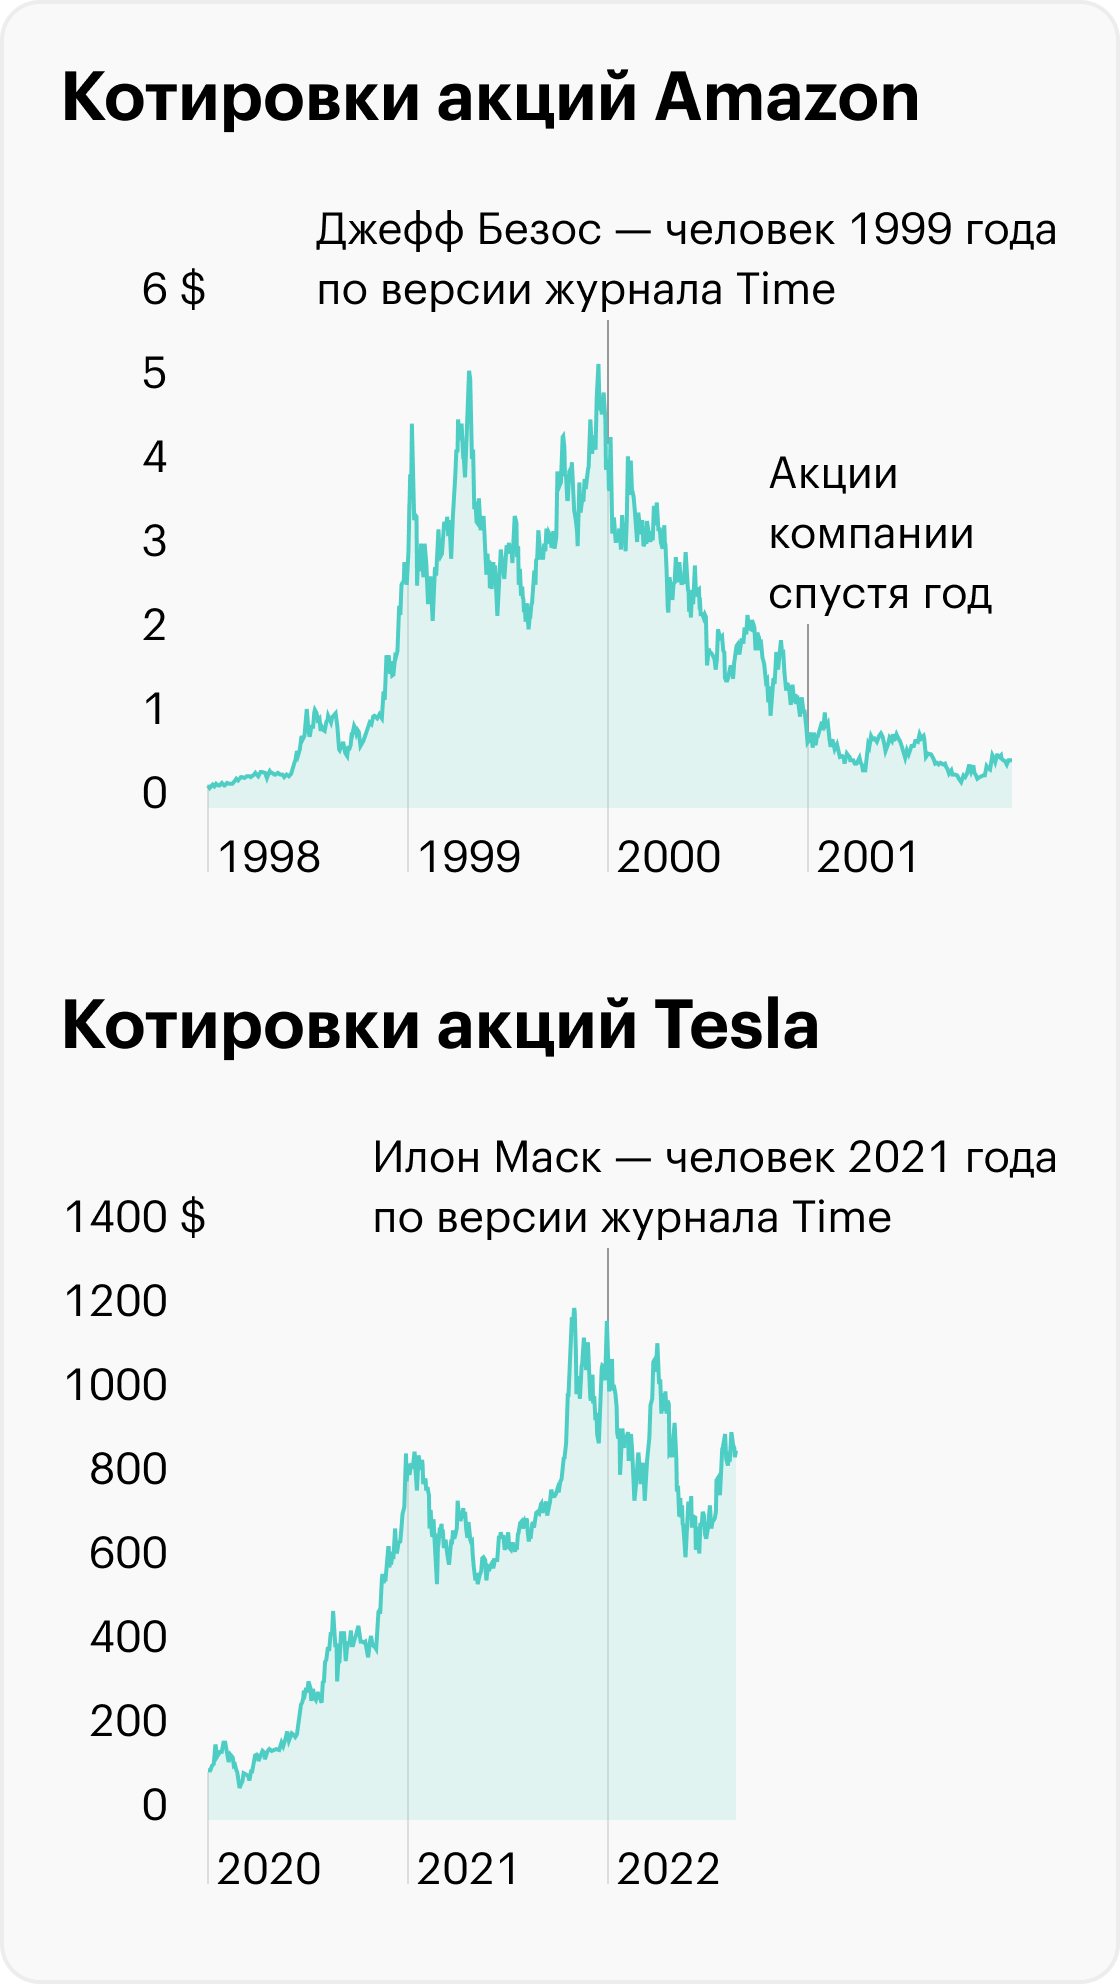 Источник: данные TradingView по акциям Amazon и Tesla